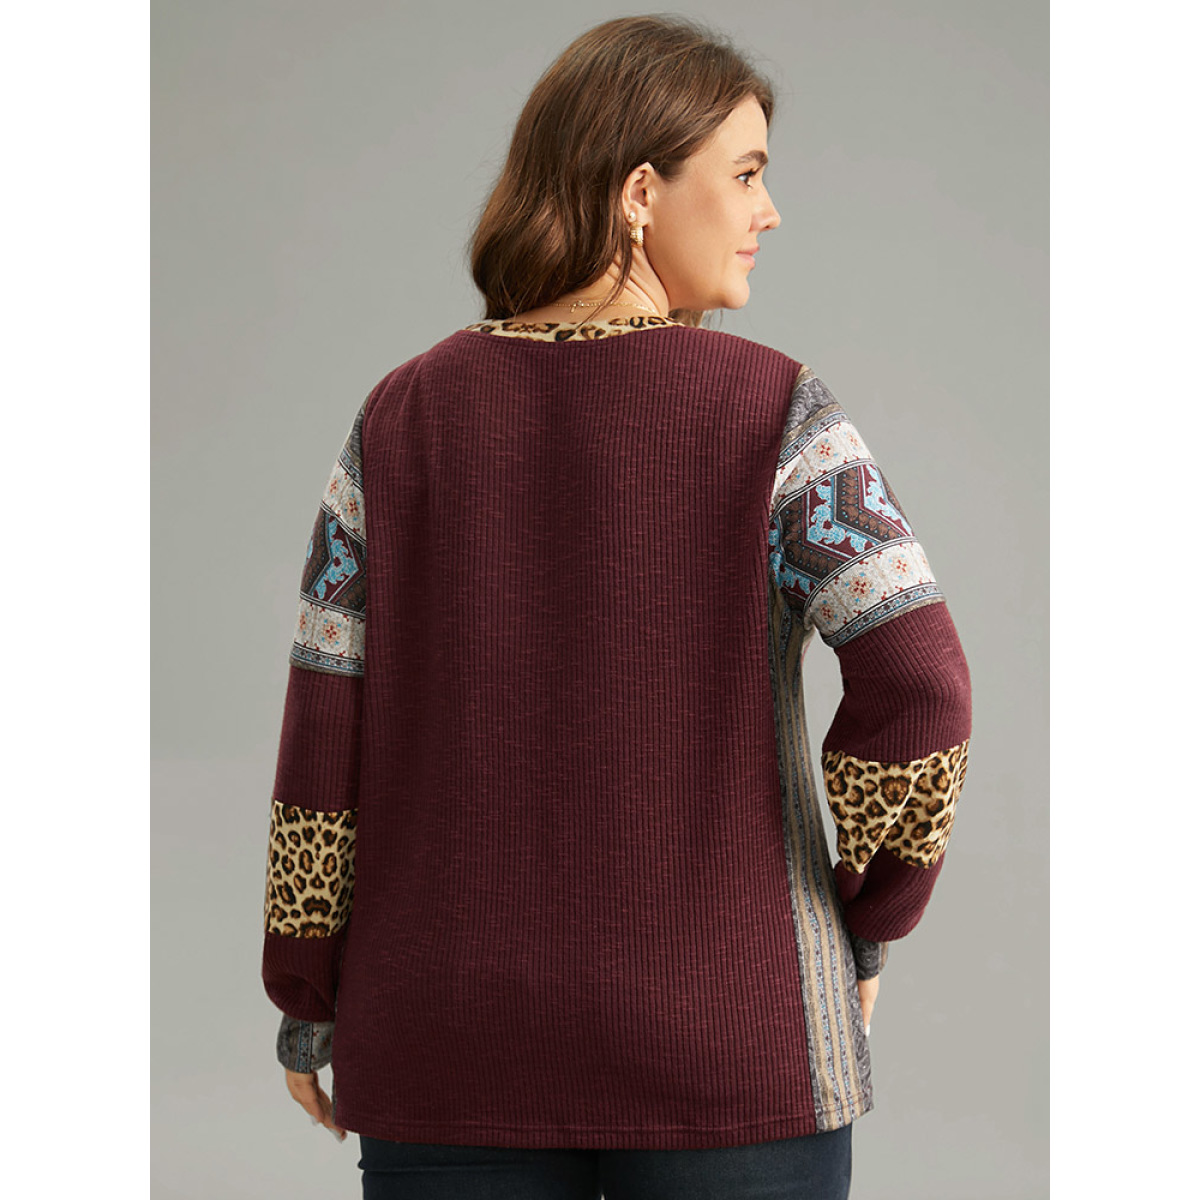 

Plus Size Leopard Boho Print Round Neck Contrast Sweatshirt Women Burgundy Elegant Texture Round Neck Dailywear Sweatshirts BloomChic